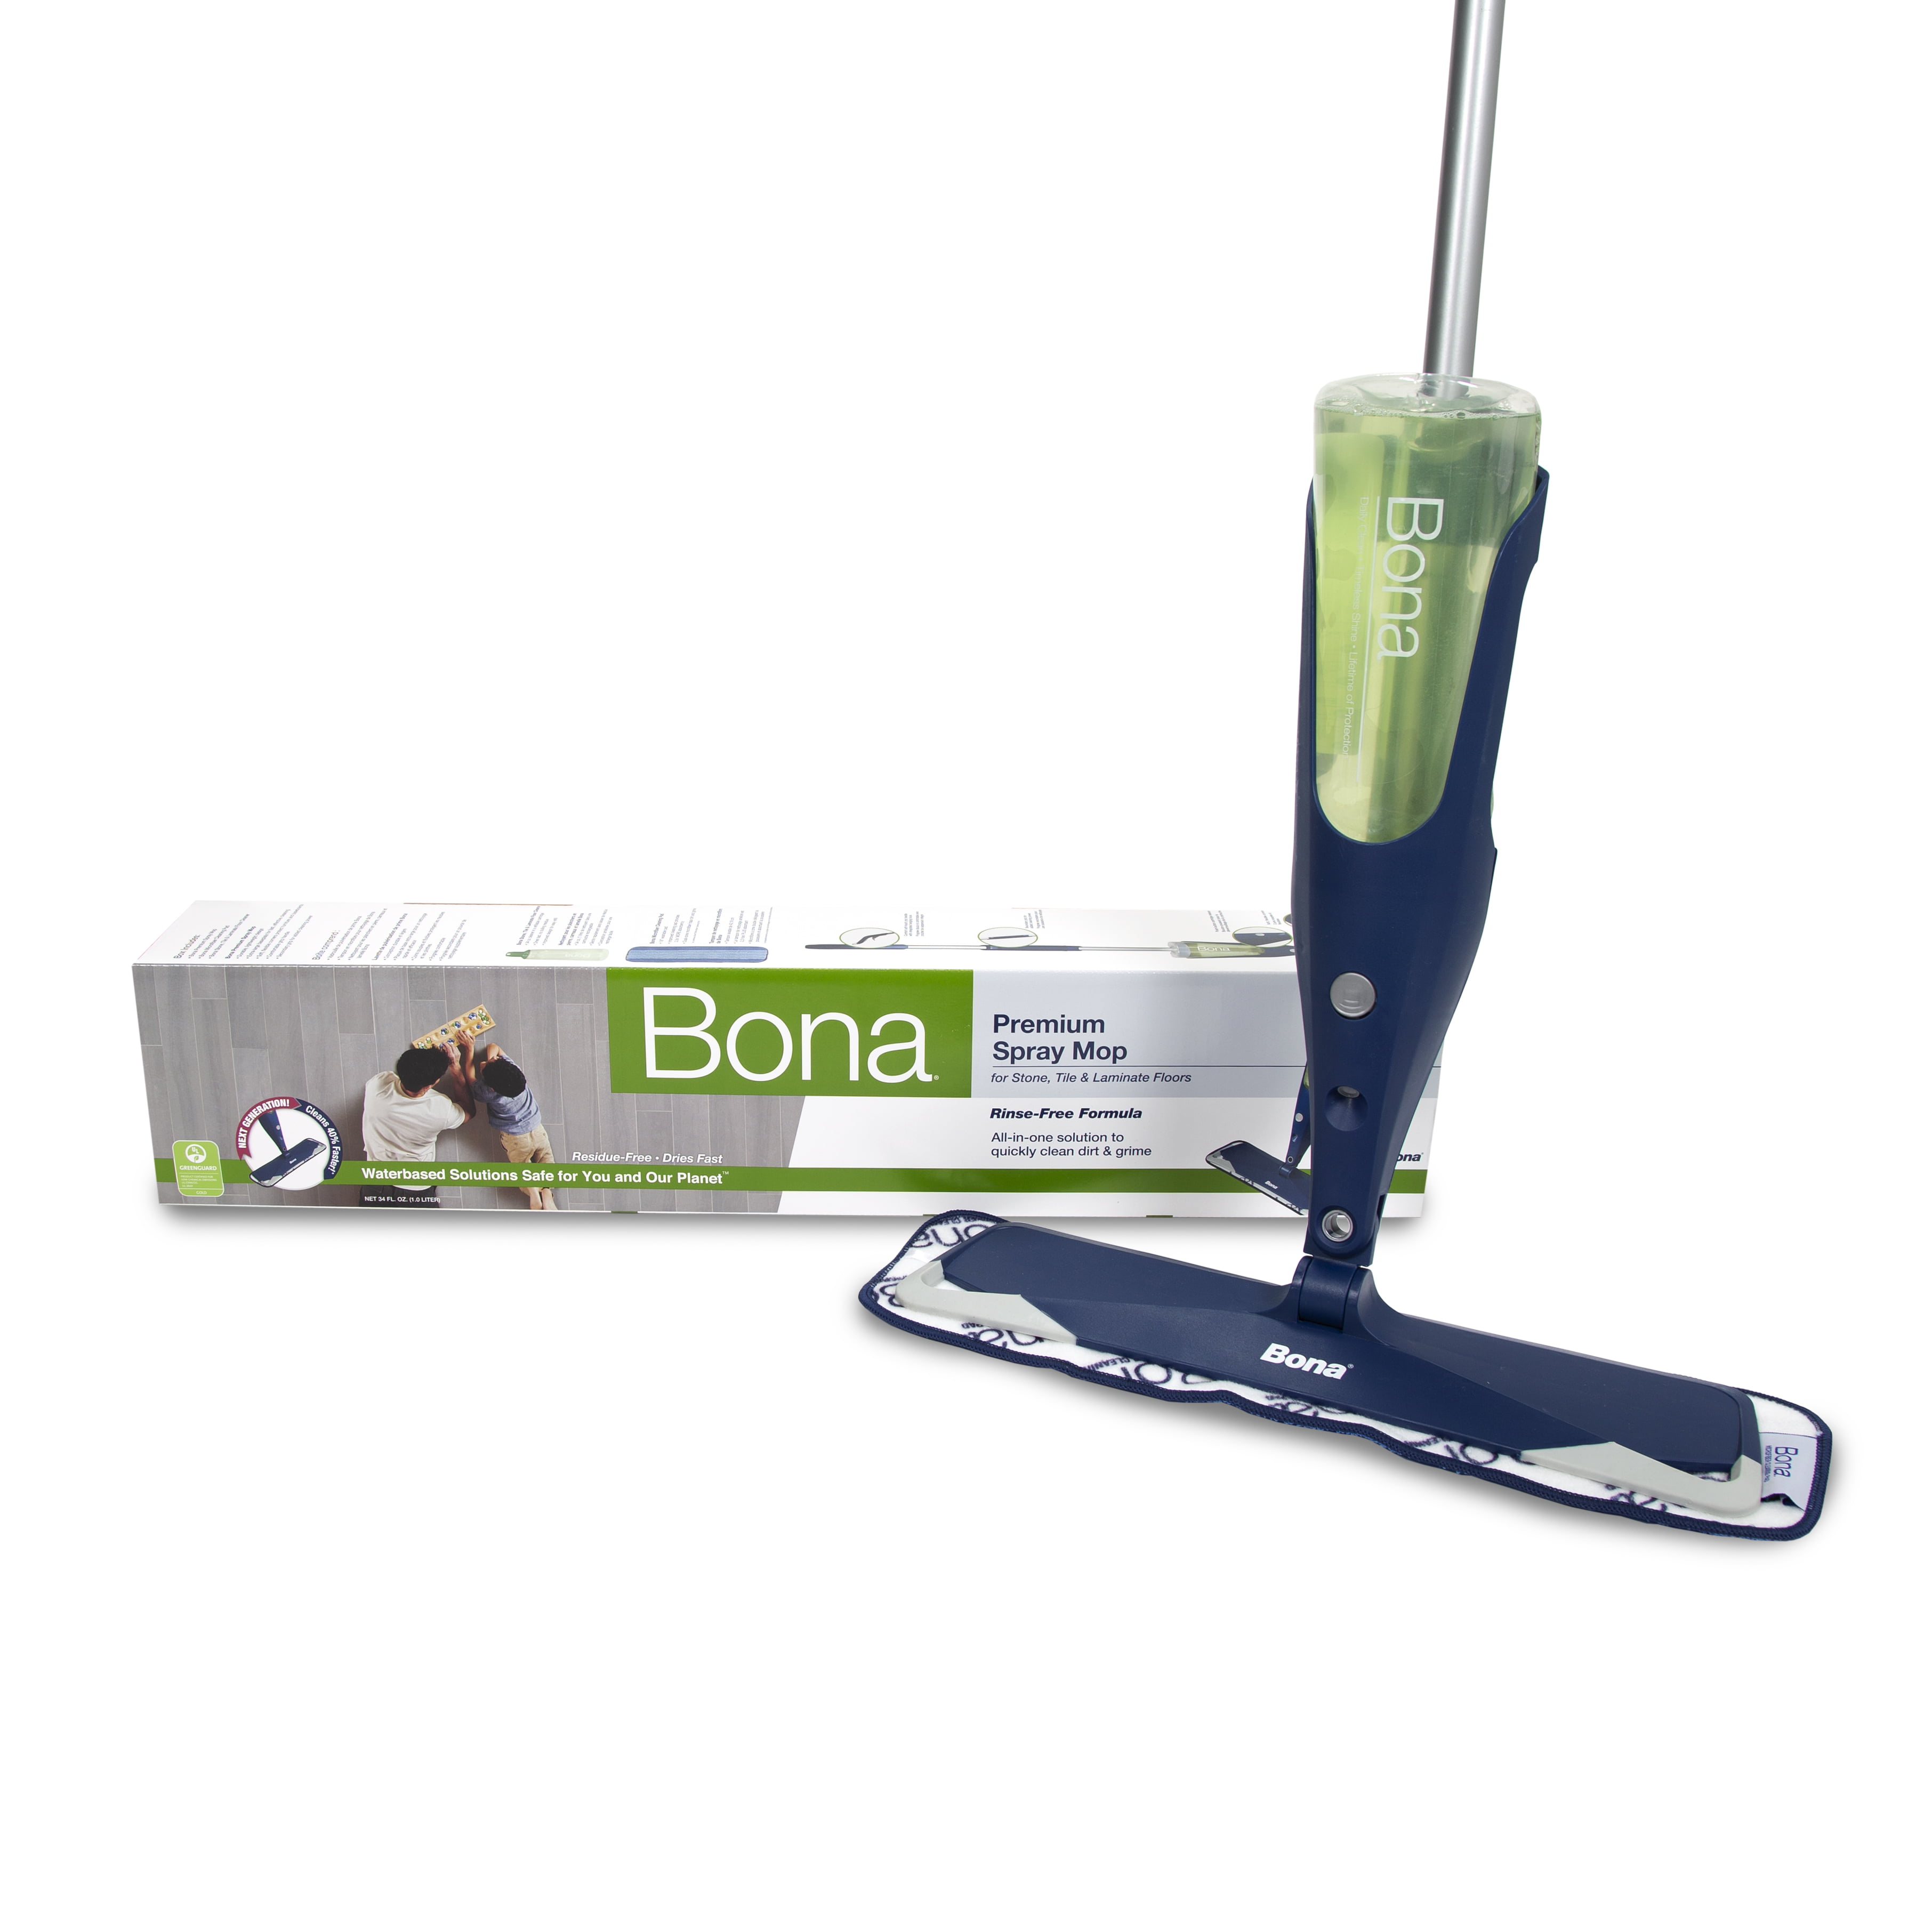 Bona Premium Spray Mop For Hard Surface, Bona Mops For Tile Floors